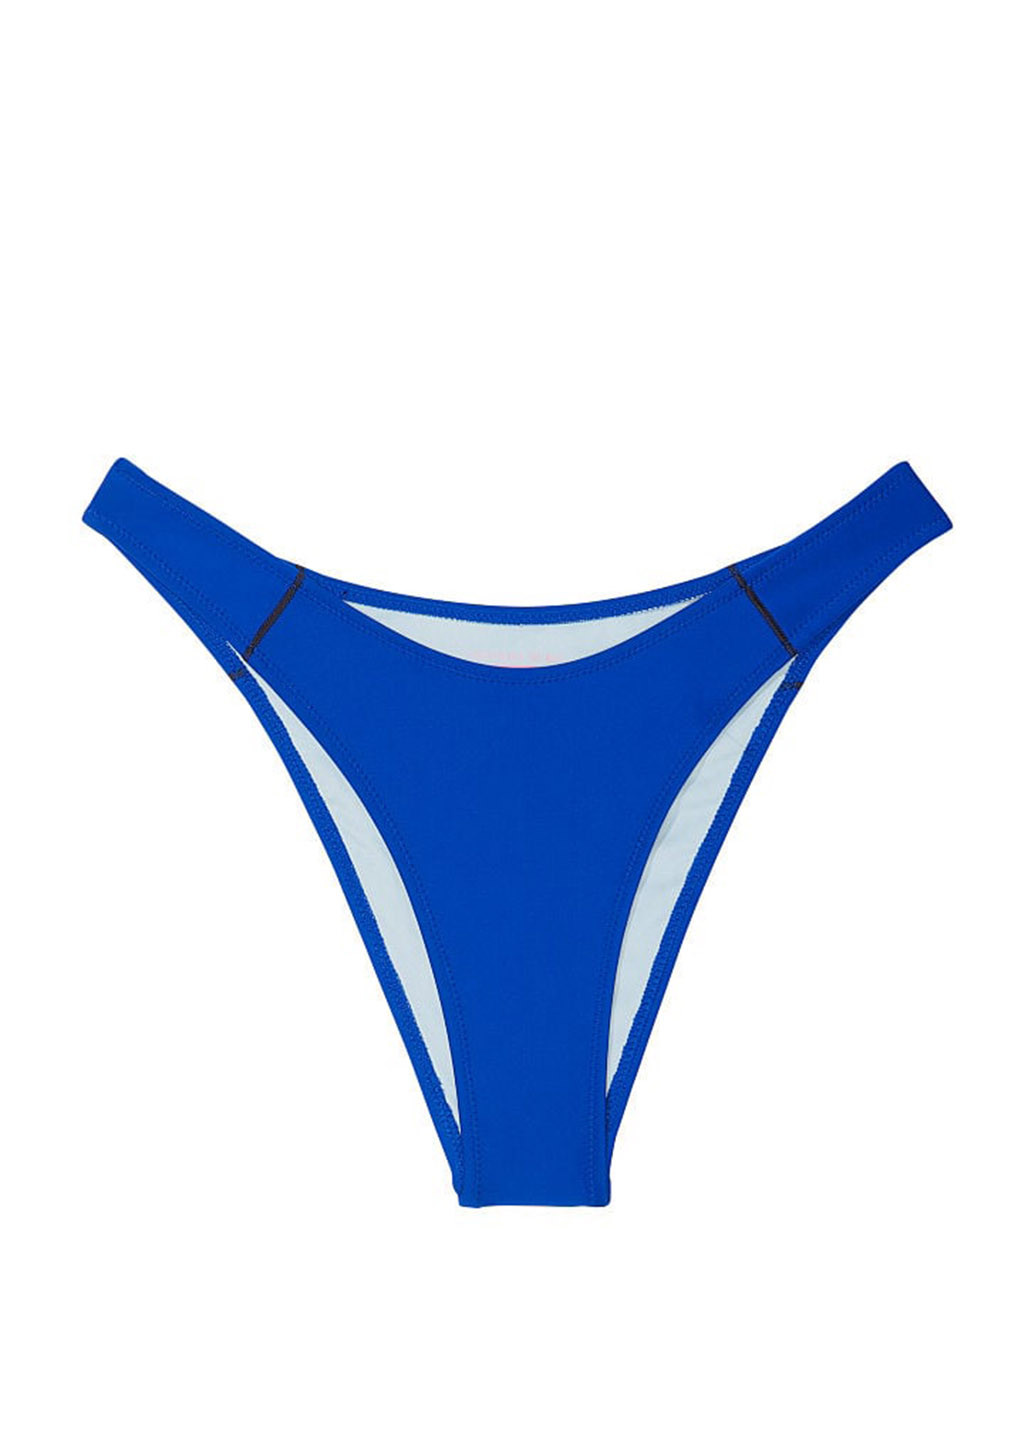 Синий летний купальник (лиф, трусы) раздельный, топ Victoria's Secret